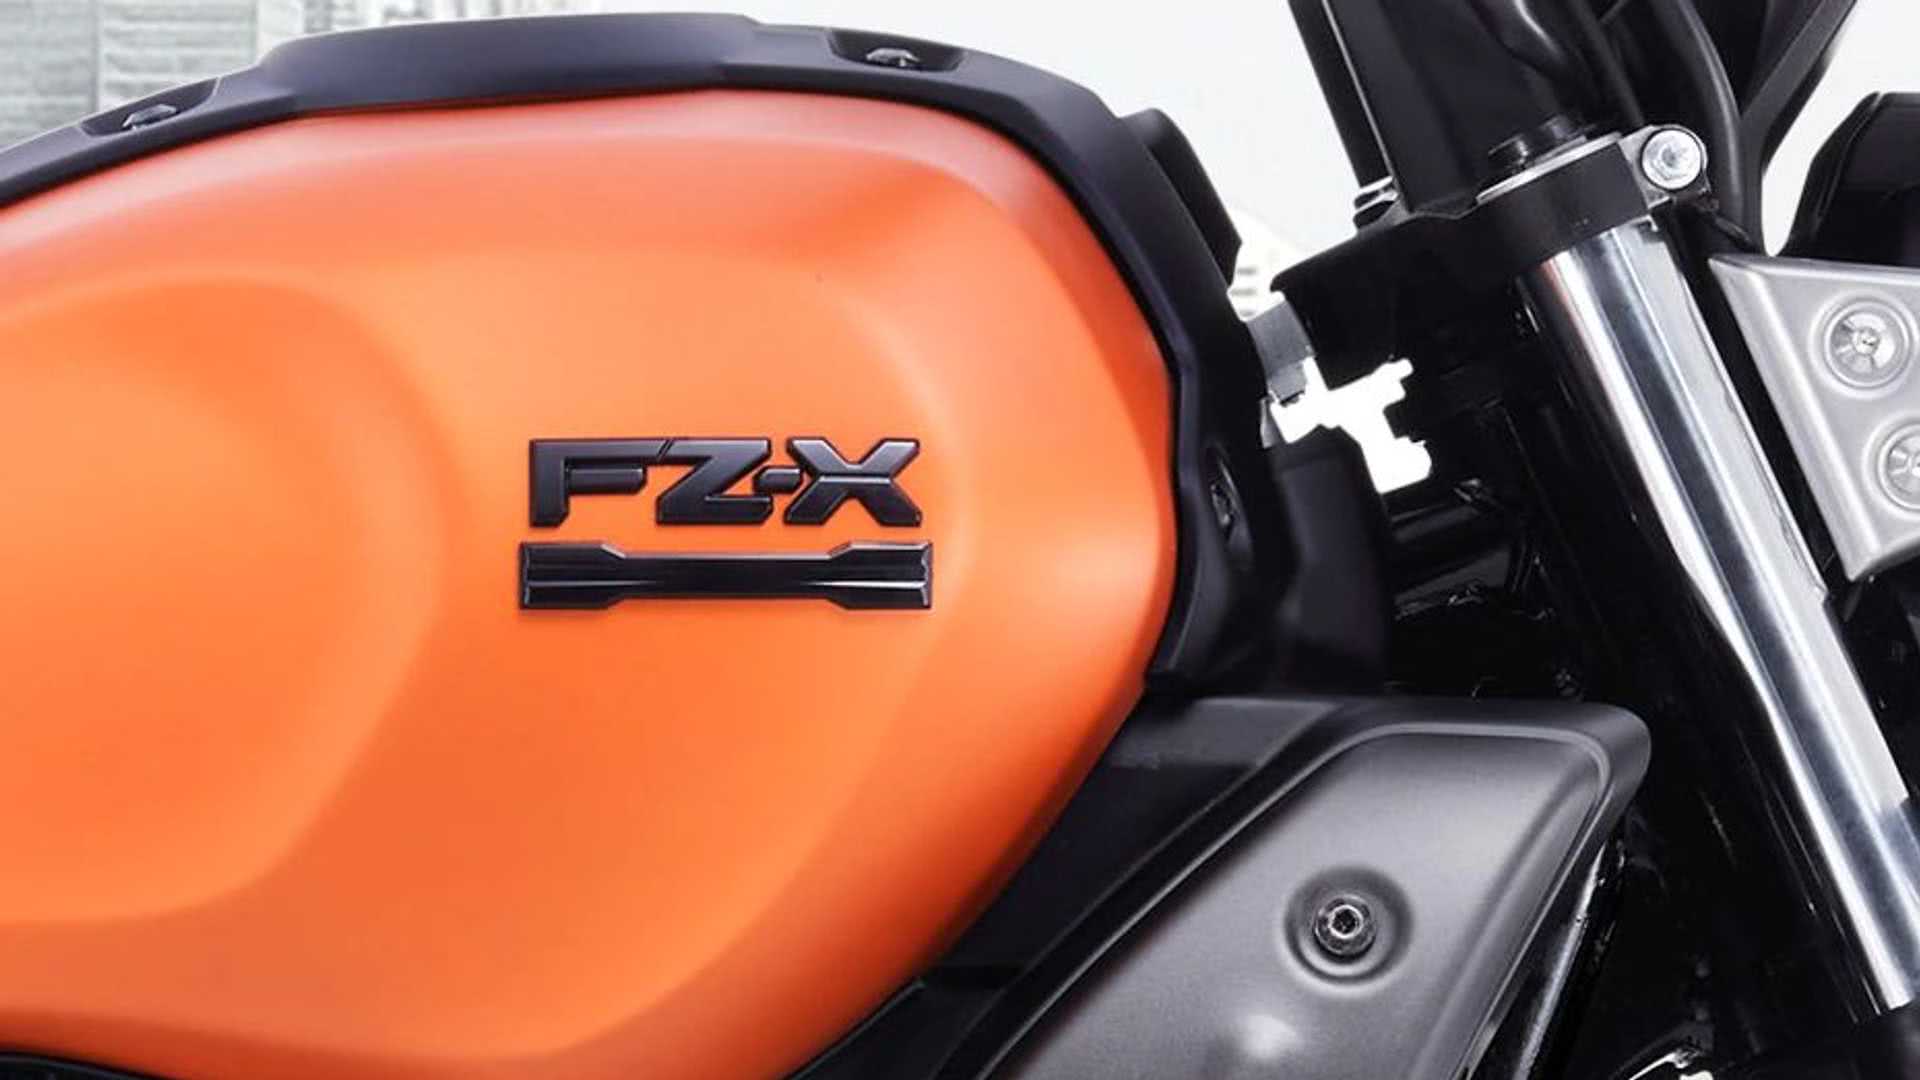 Yamaha FZ-X FI